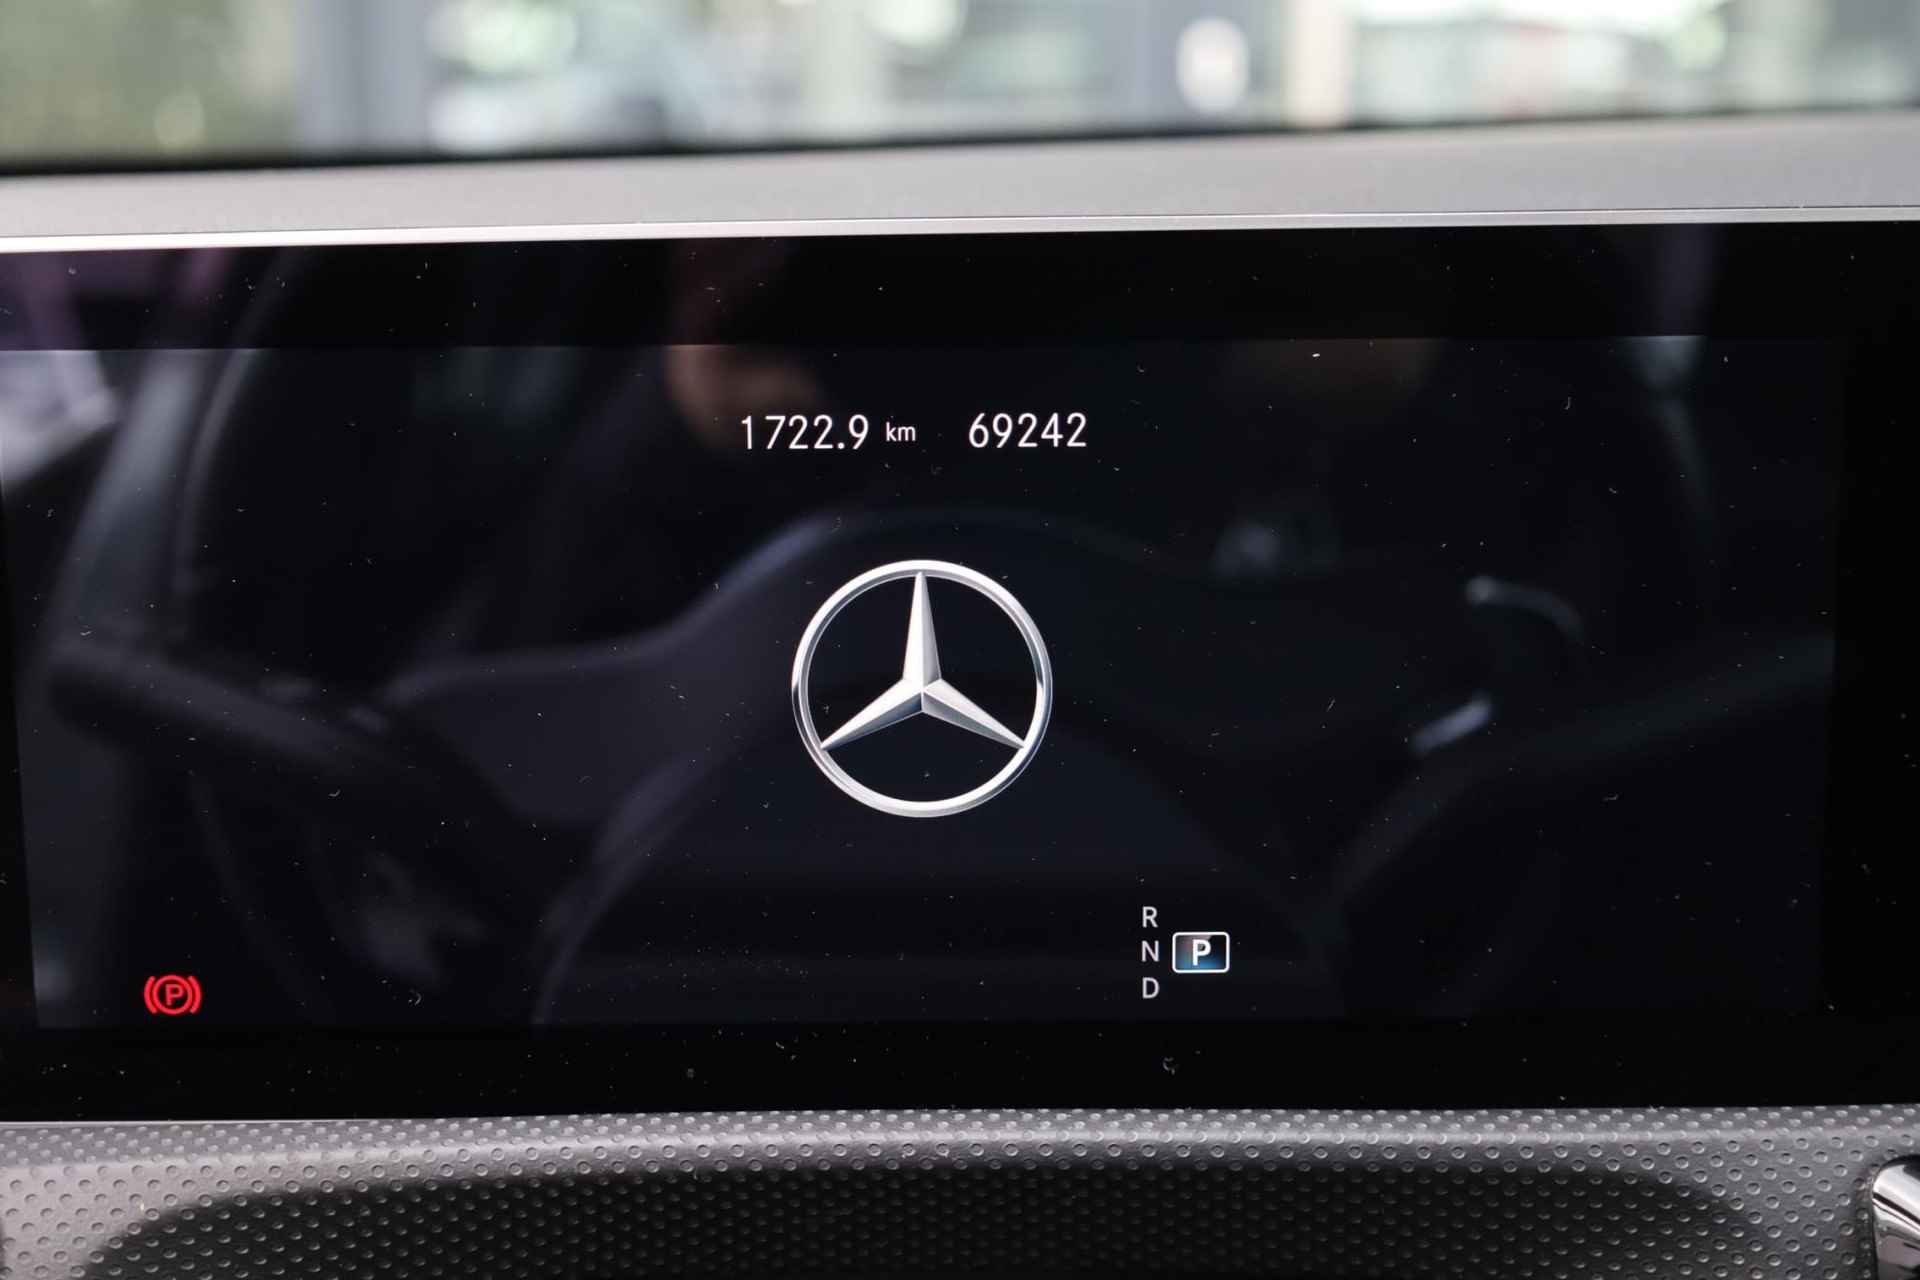 Mercedes-Benz A-klasse 200 Business Solution AMG 163PK / 120kW automaat, Leder / alcantara, winterset LMV, digitaal dashboard, navigatie, LED verlichting voor en achter, 18" LMV, stoelverwarming, parkeersensoren voor en achter, AMG bumpers - 17/44